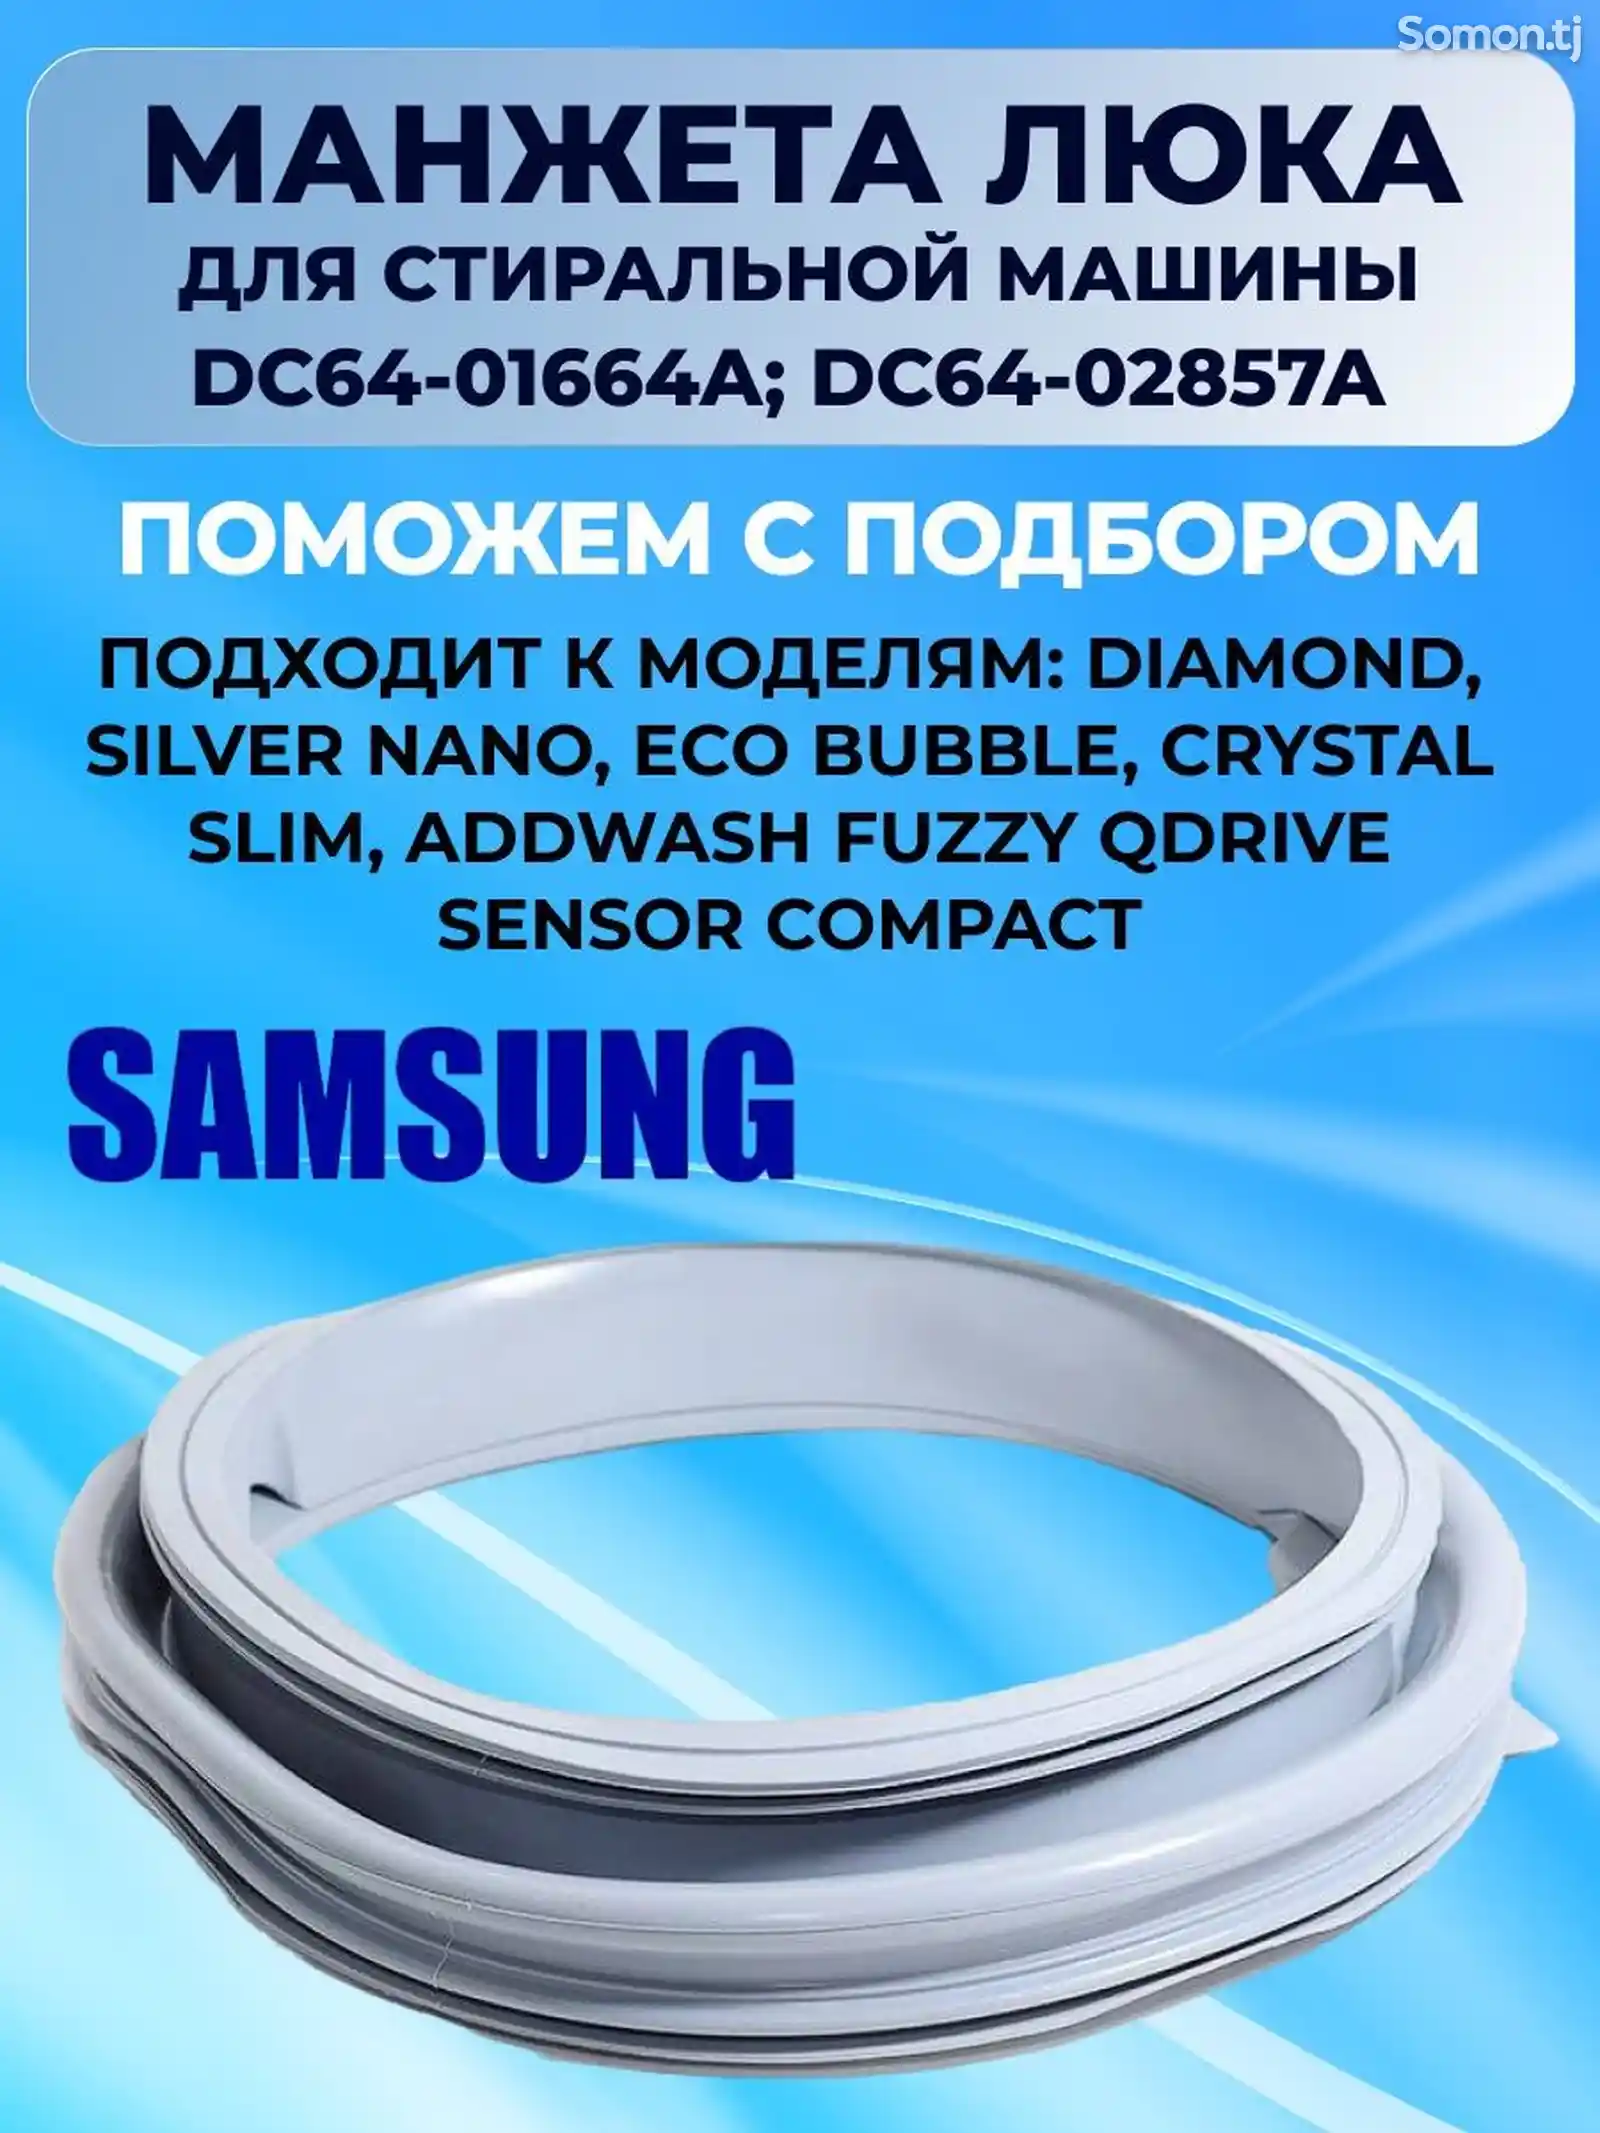 Манжеты люка для стиральной машины Samsung-3